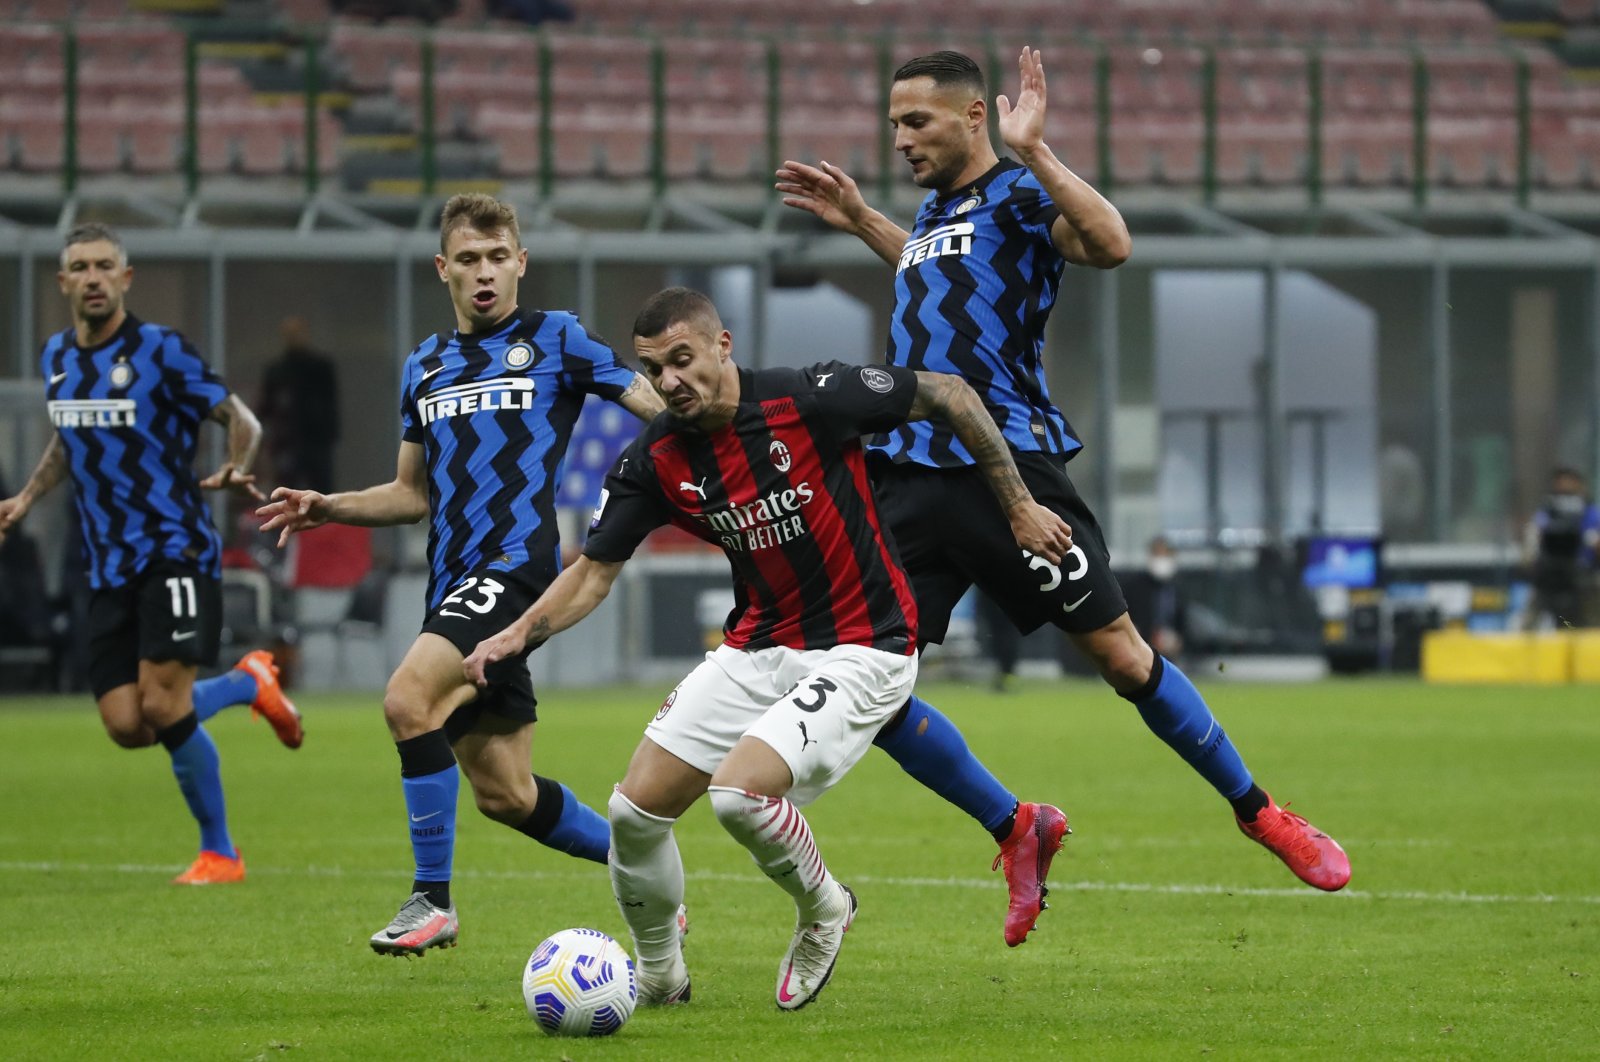 Pertarungan Milan, bentrokan Manchester untuk menandai akhir pekan derby di Eropa